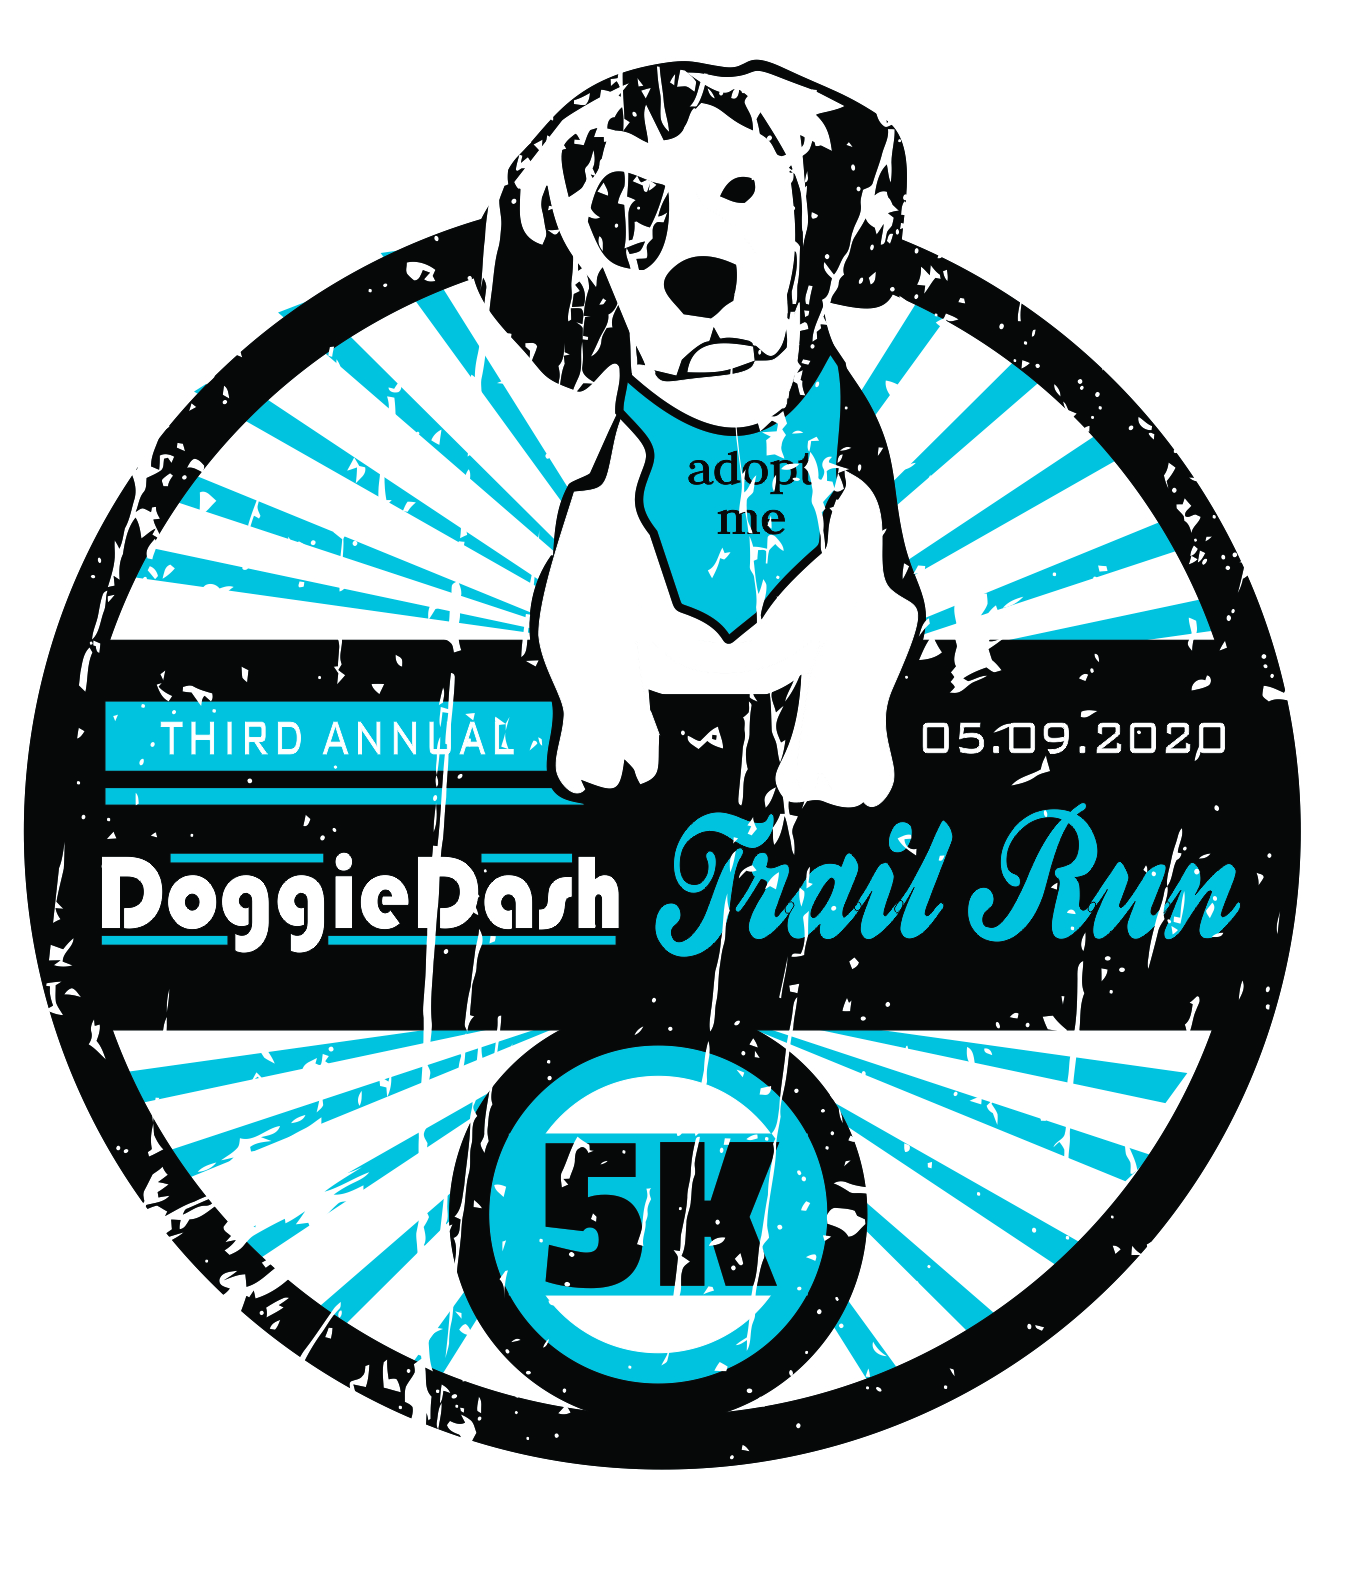 Doggie Dash 5K Trail Run